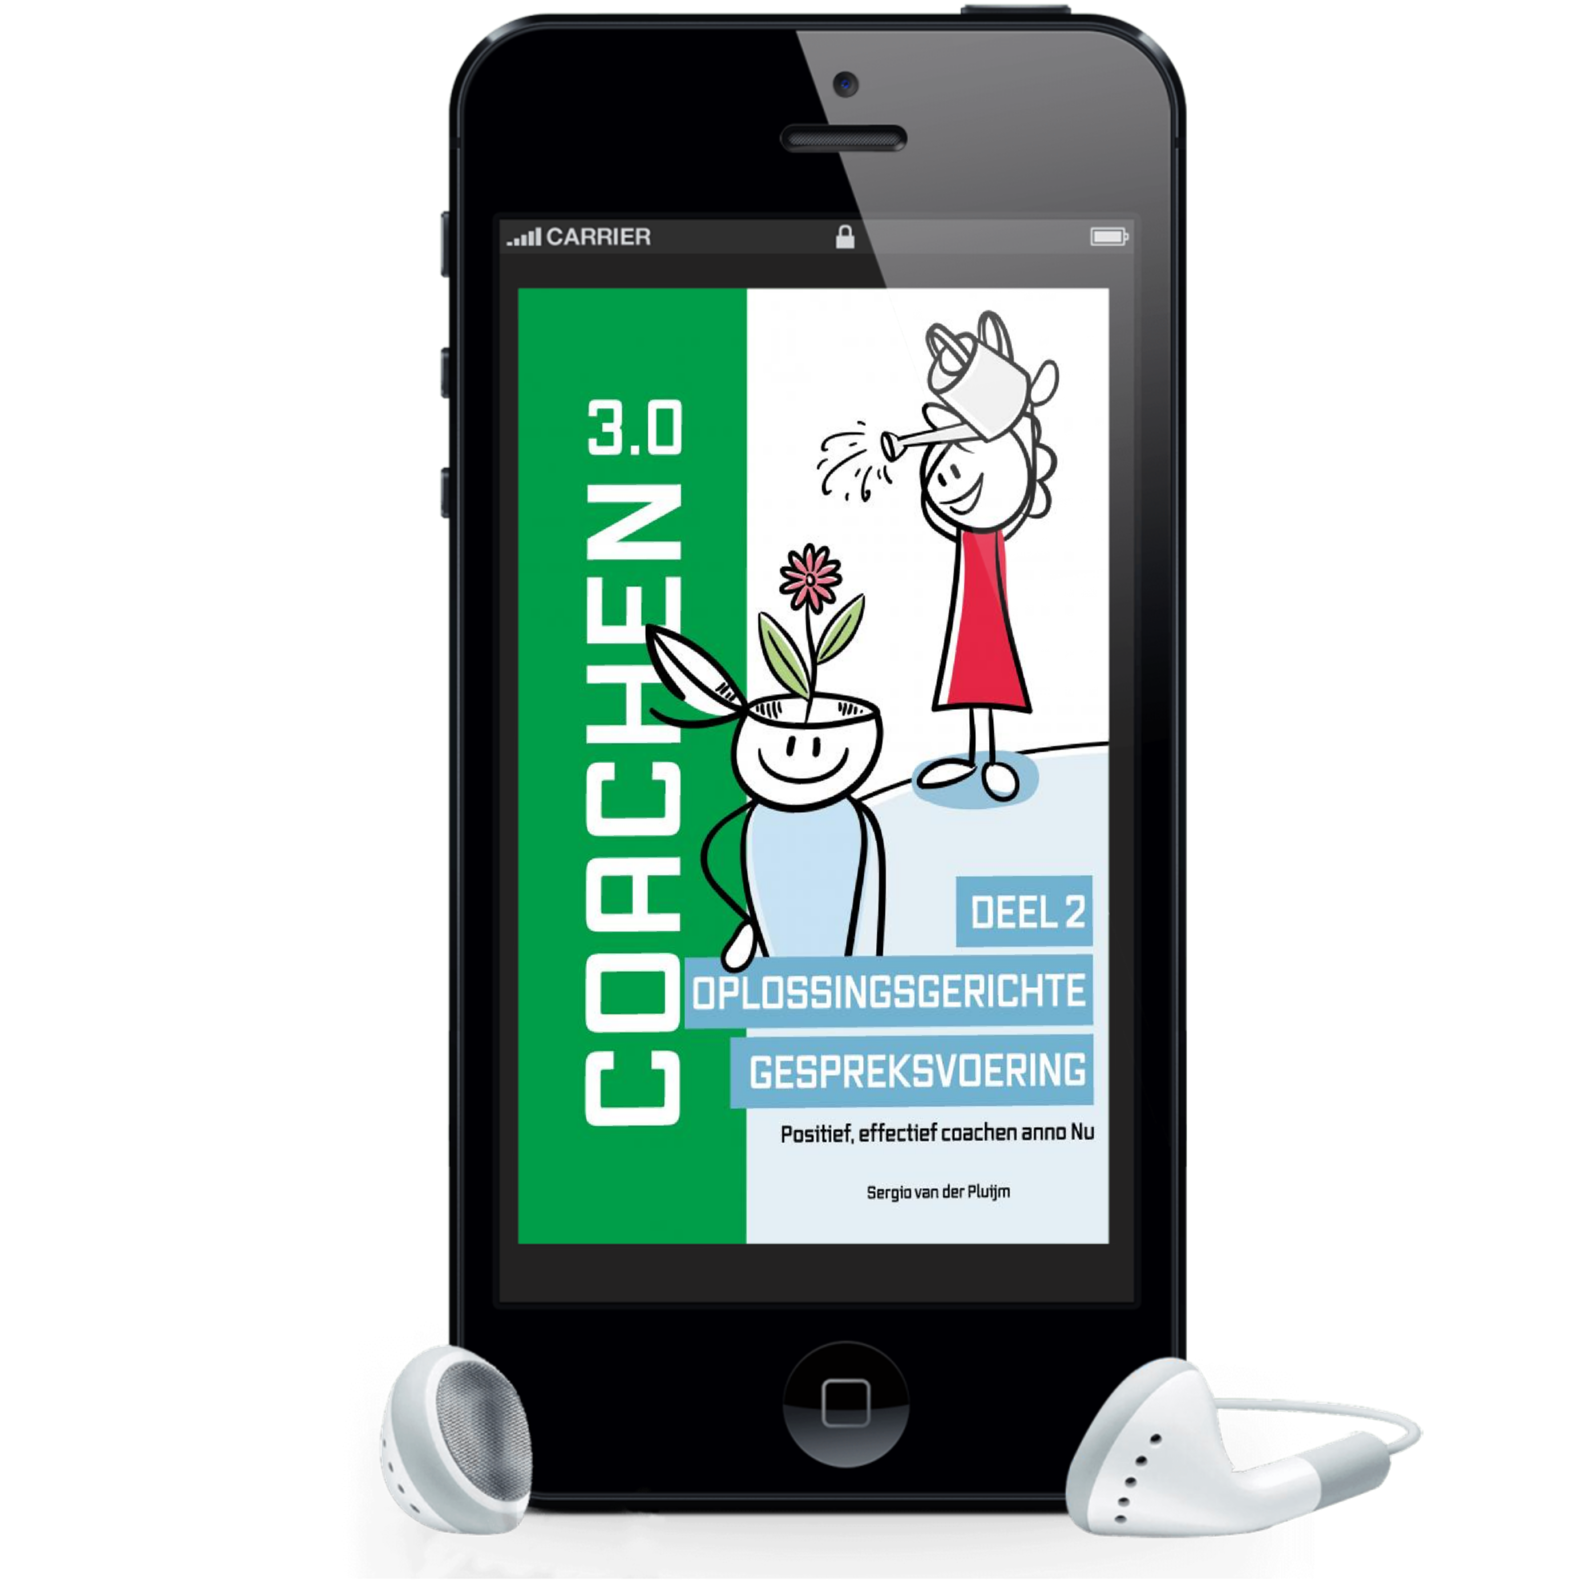 Audioboek Coachen 3.0 – Deel II: Oplossingsgerichte gespreksvoering